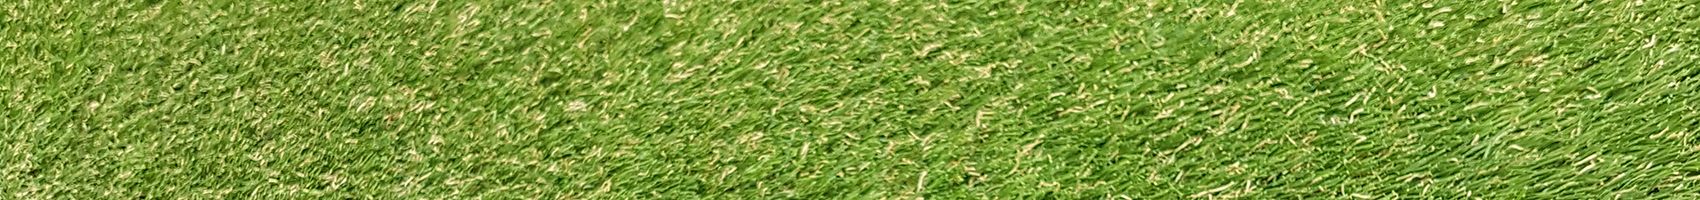 30mm Pile Windsor Artificial Grass 4m x 25m